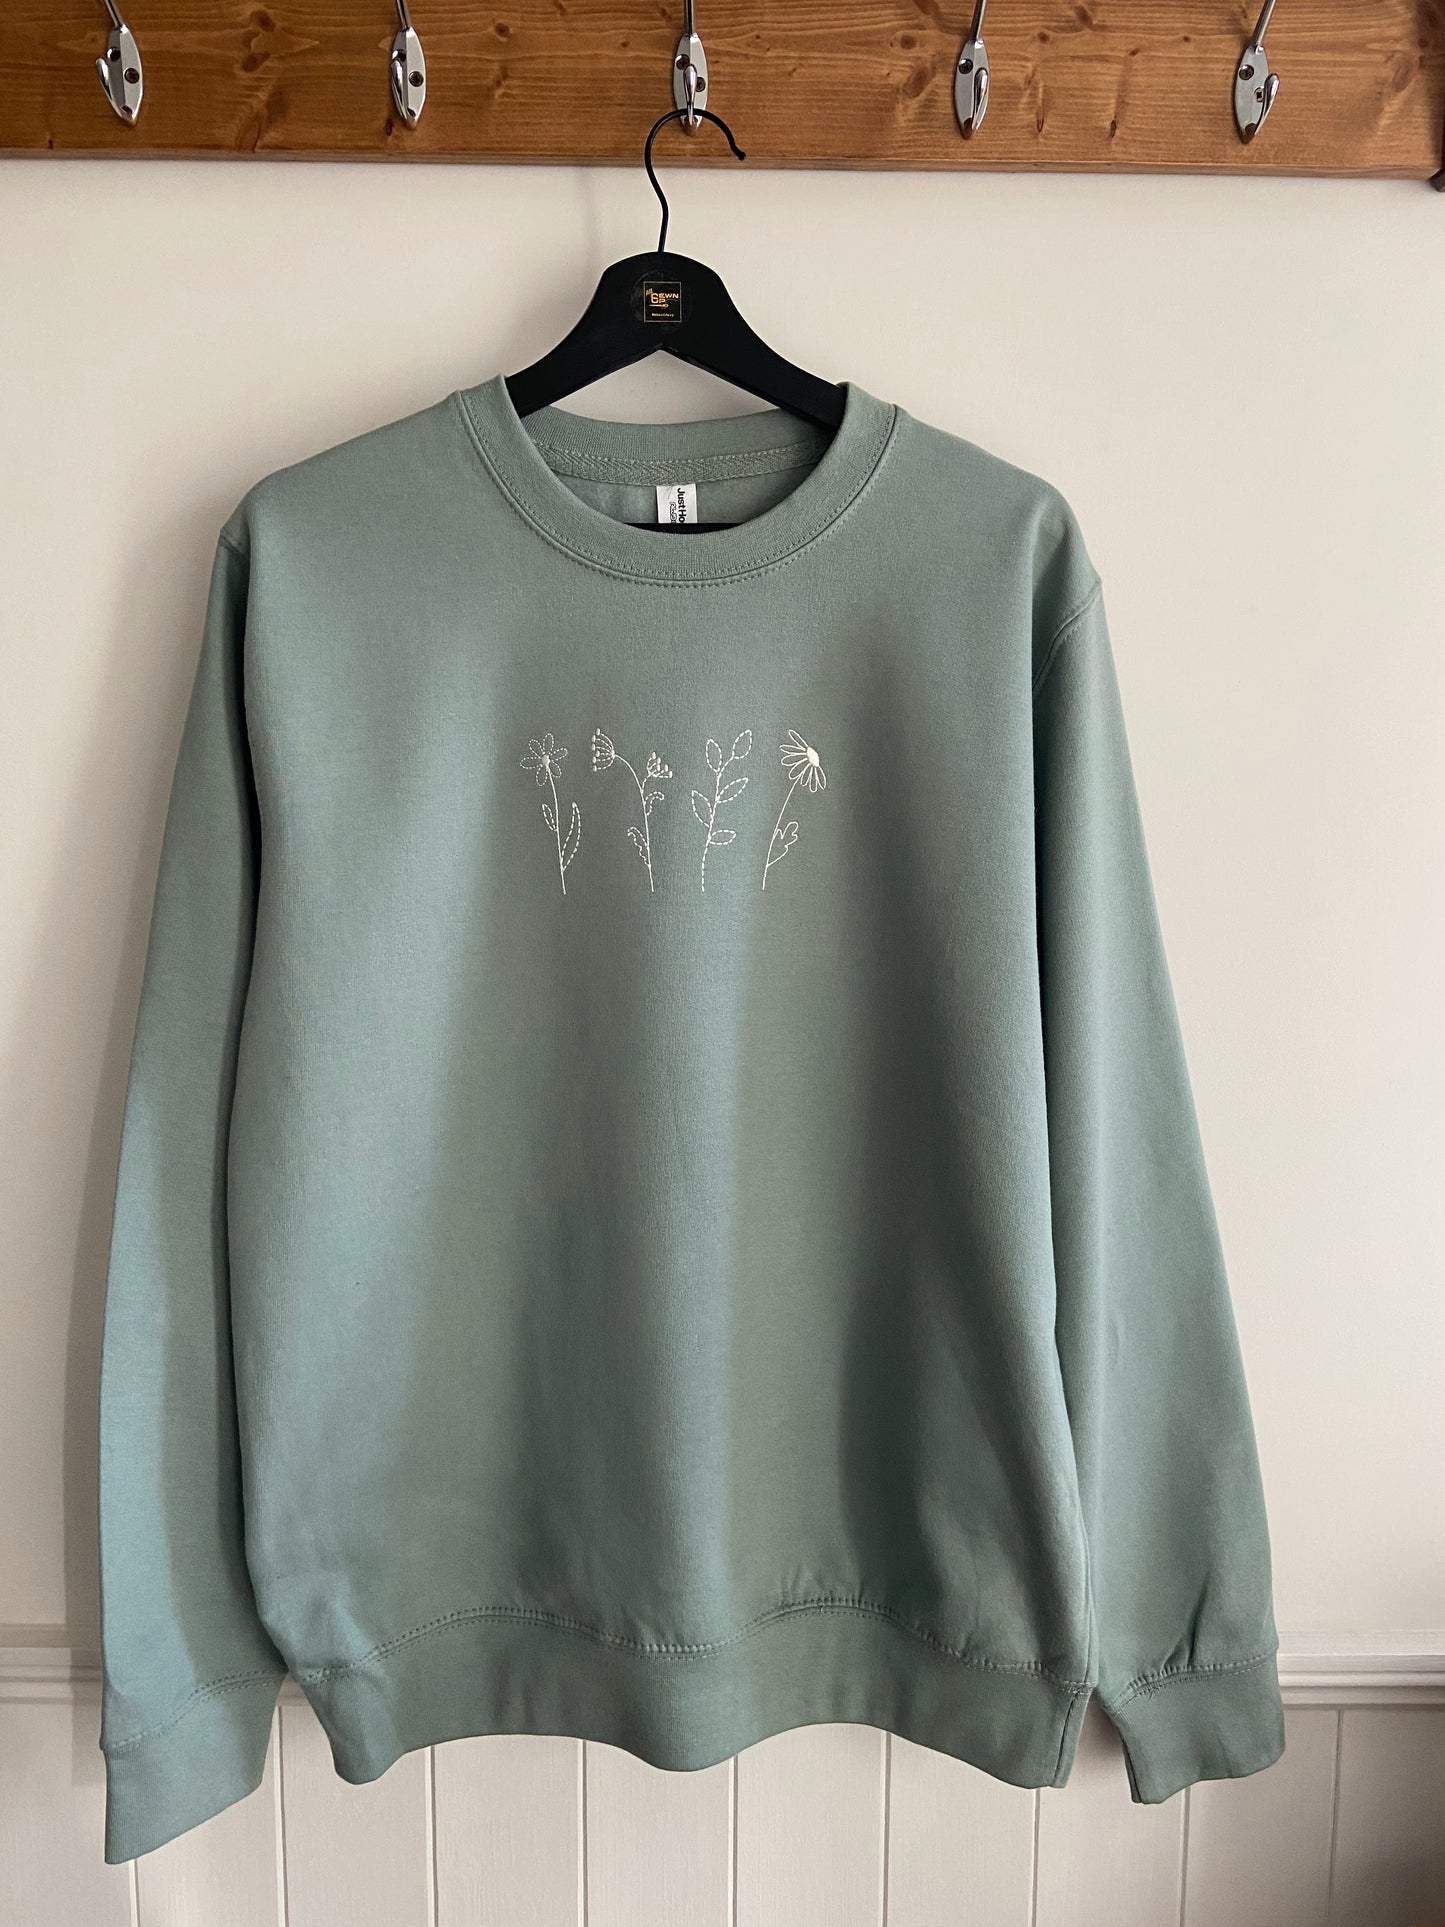 Wildflower Design Unisex Adults Sweatshirt